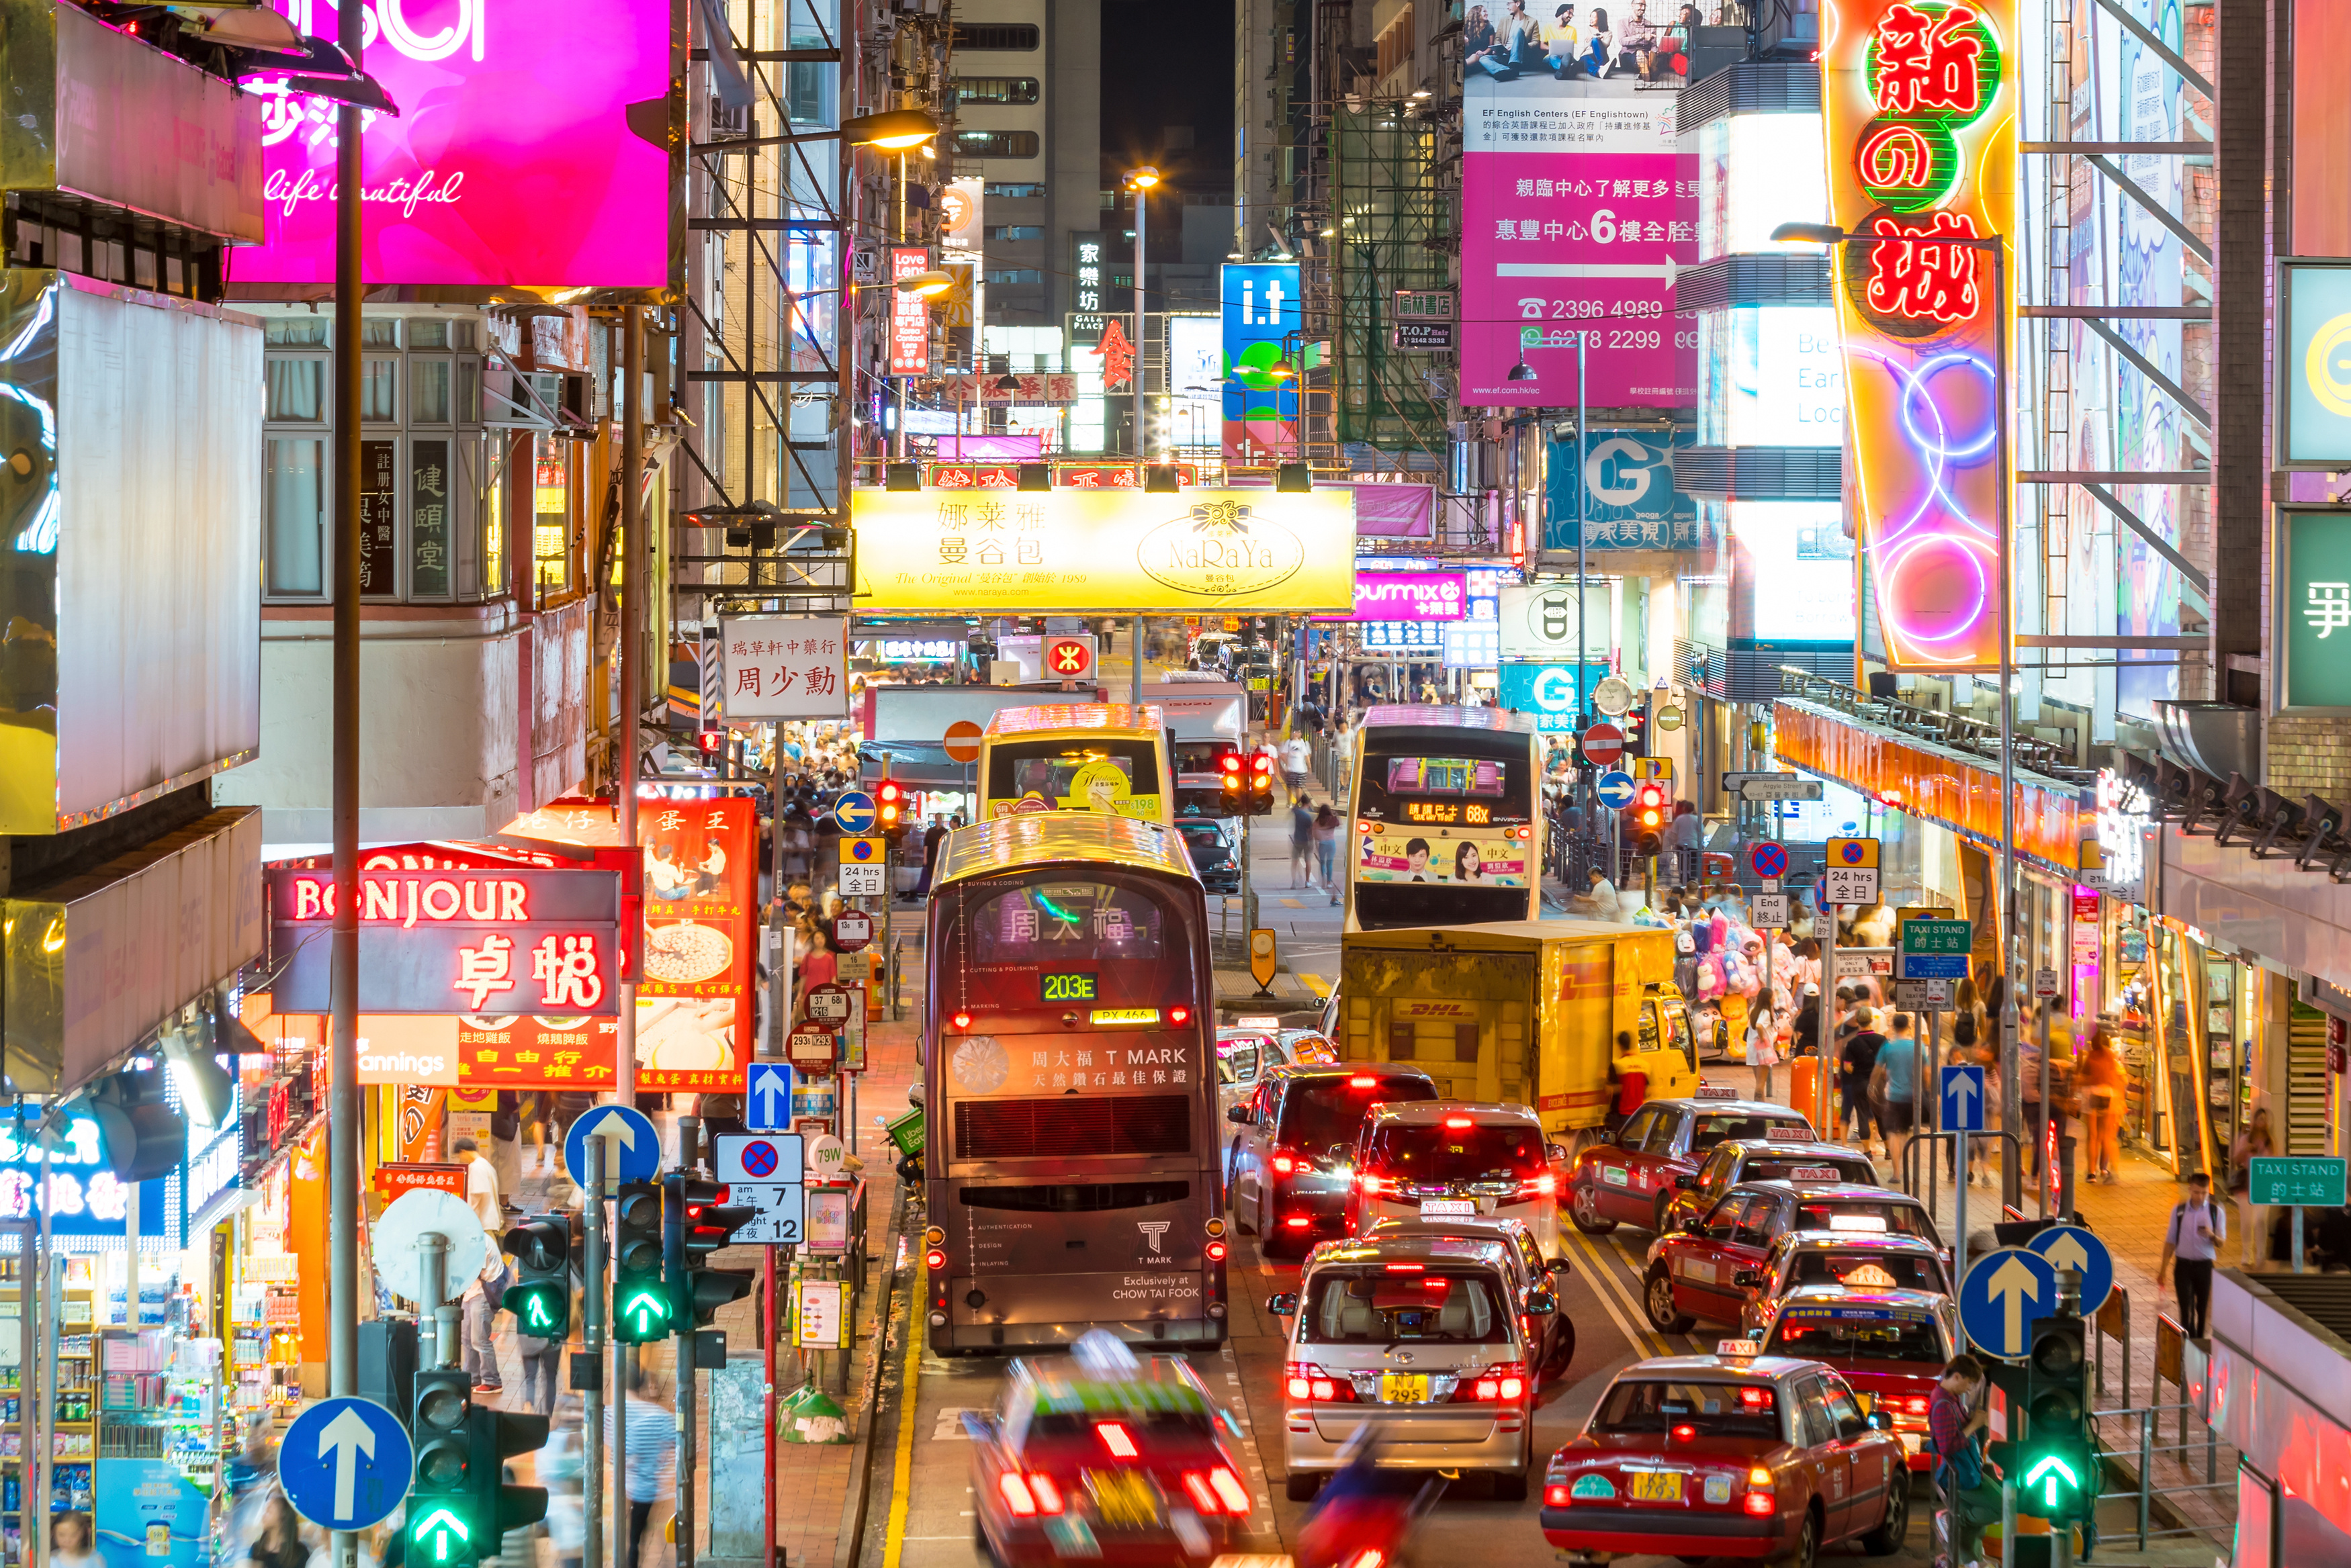 An image showing a busy Hong Kong street at night.